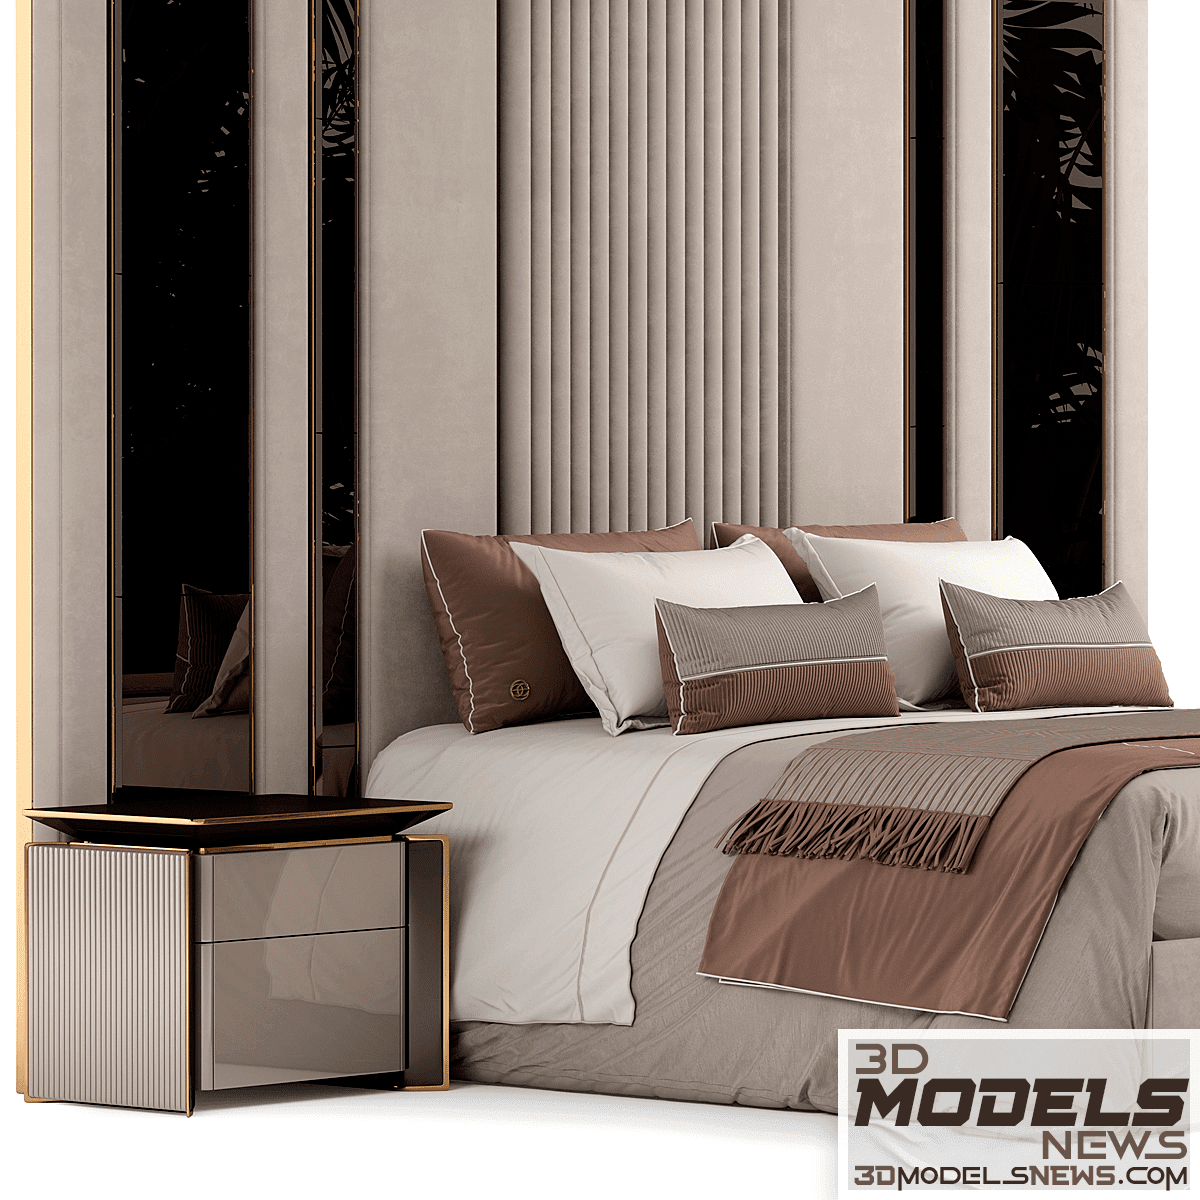 Elve luxury bed model 3